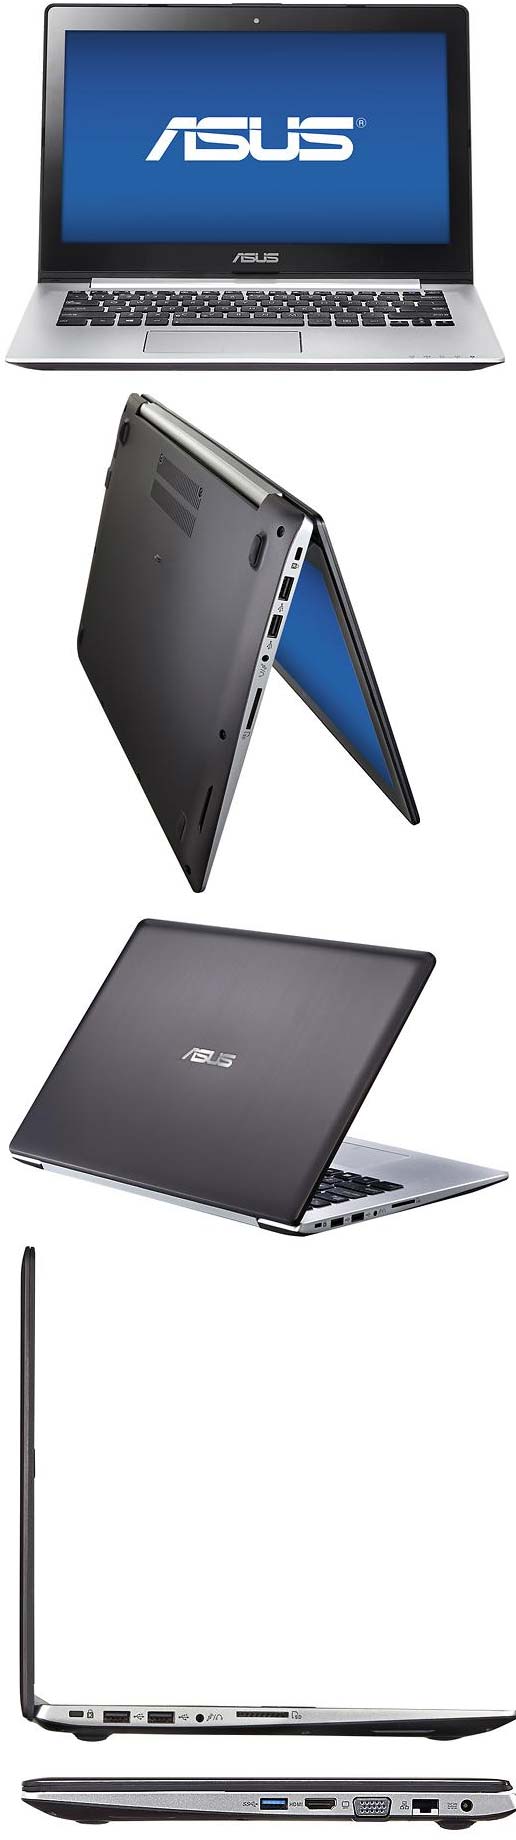 ASUS S300CA-BBI5T01 - доступный лэптоп